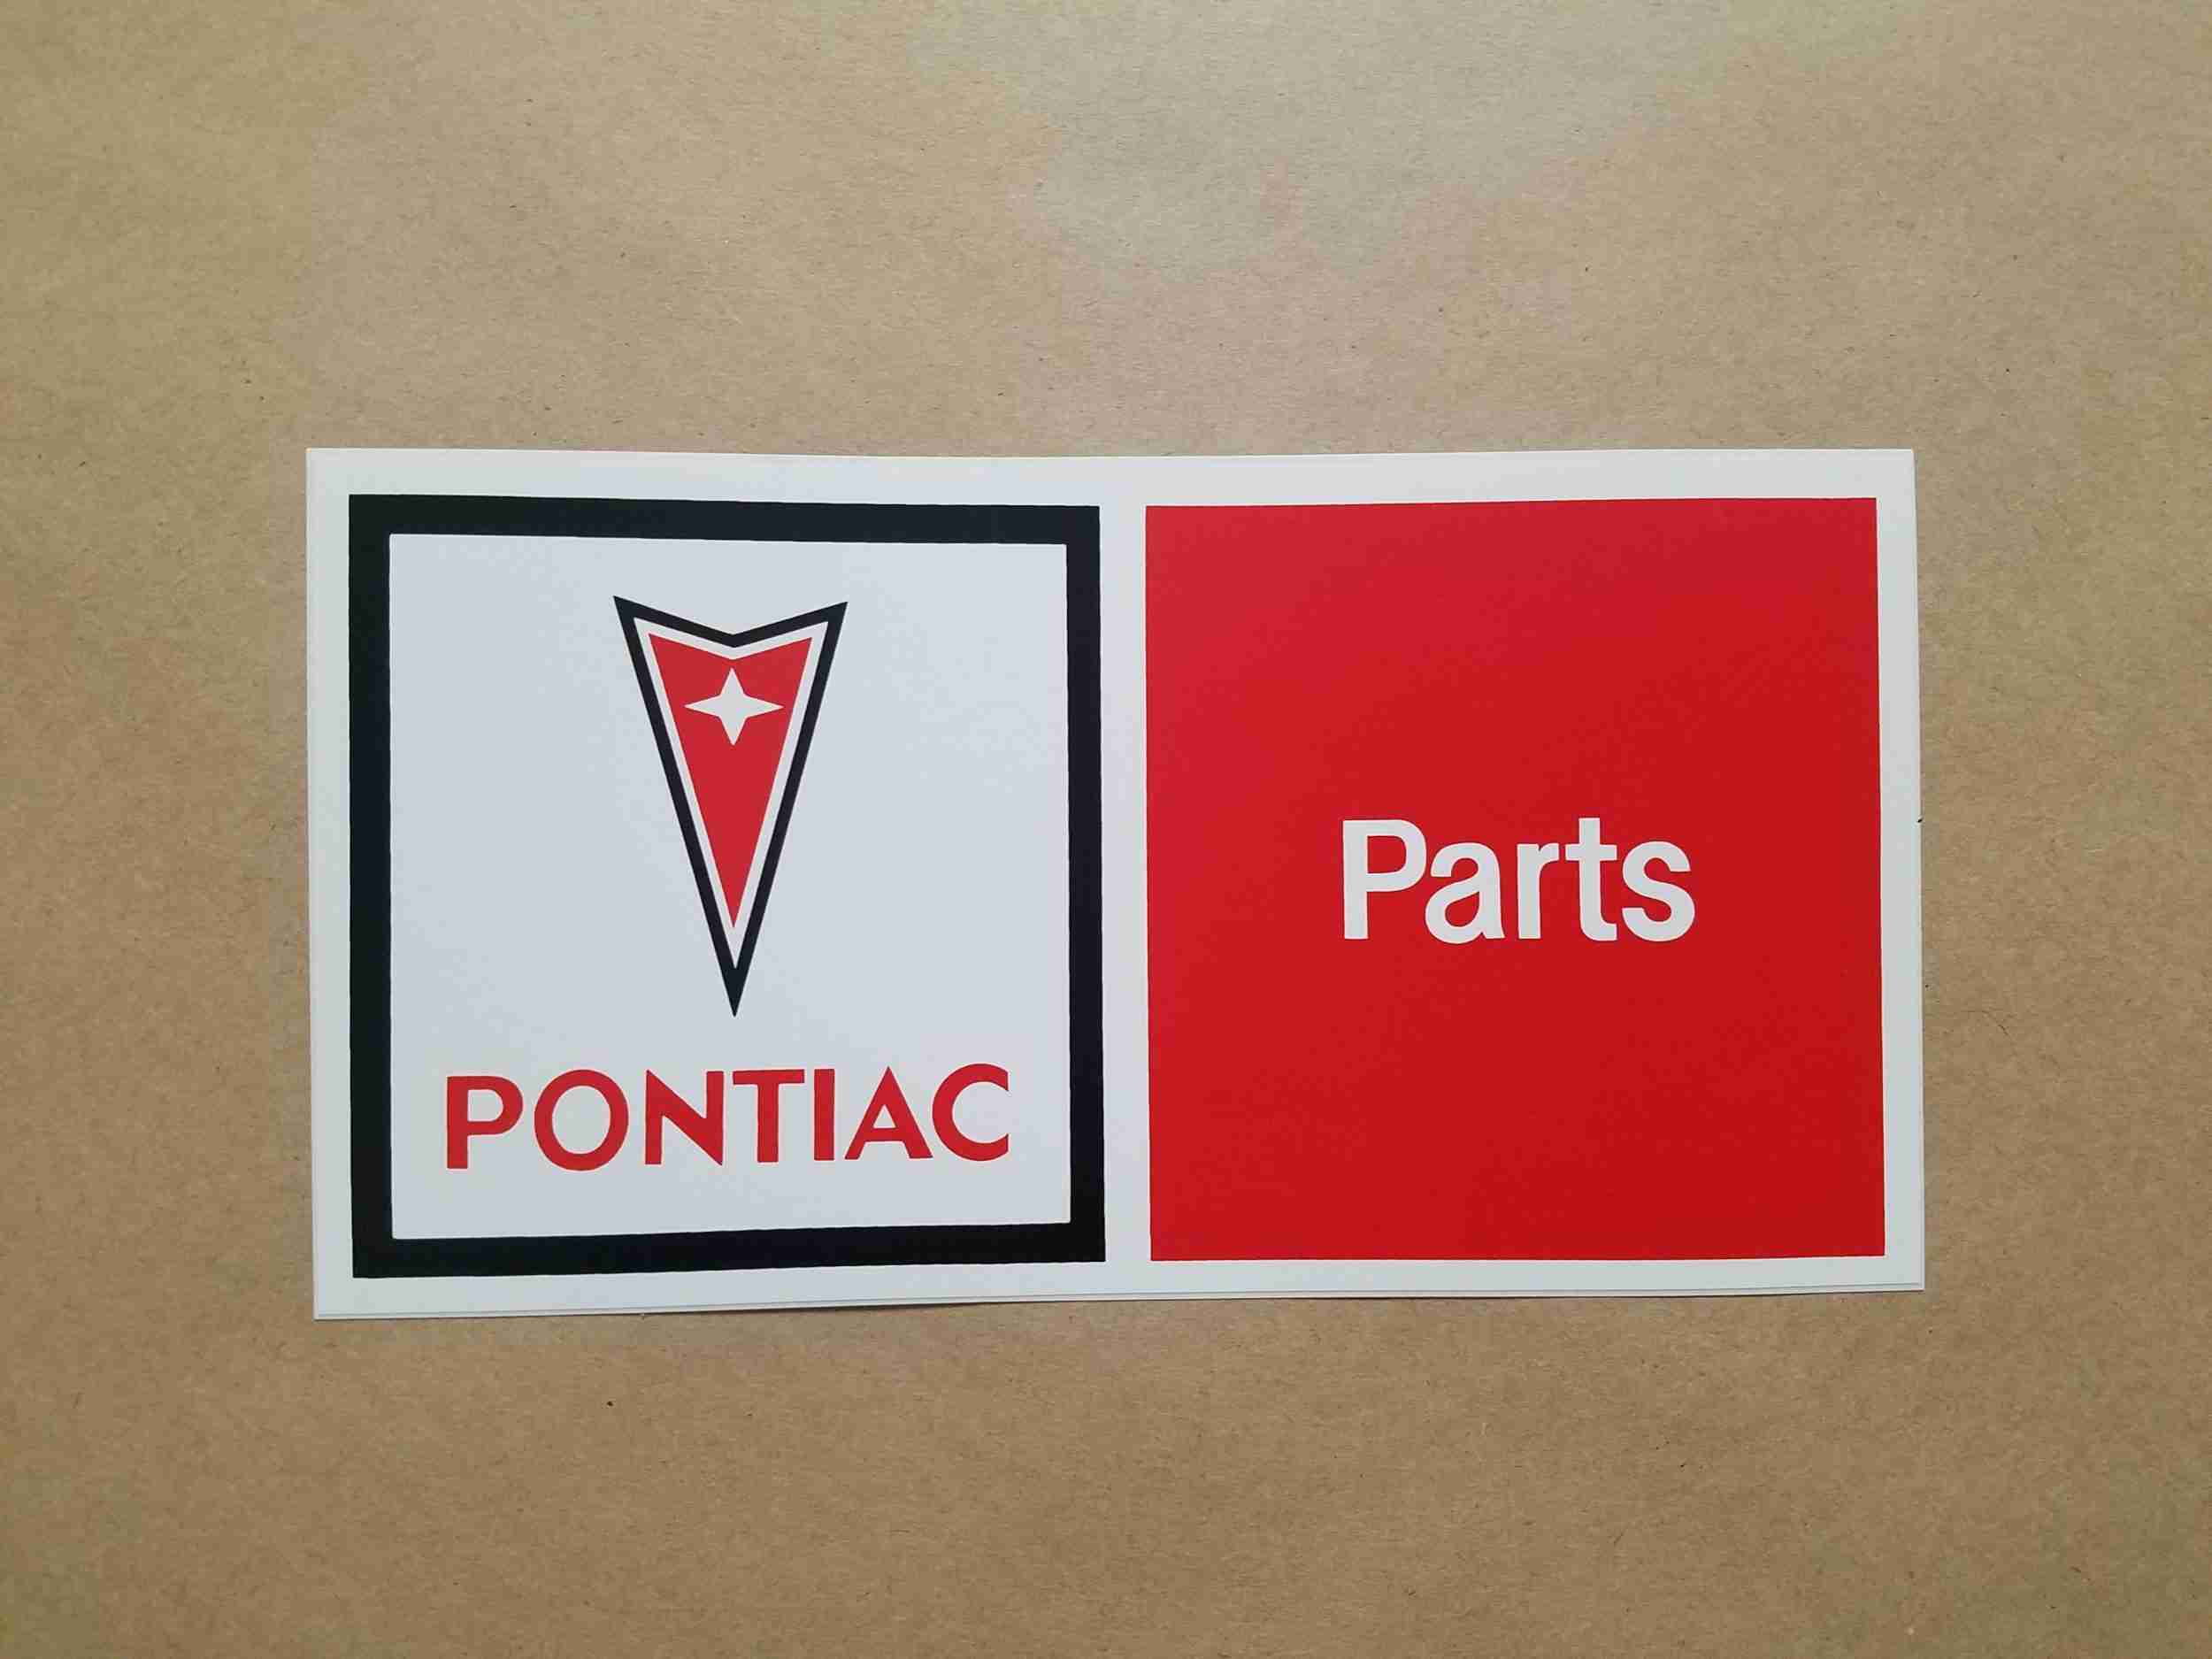 1959-2010 "Pontiac Parts" Arrowhead Decal, 8” long